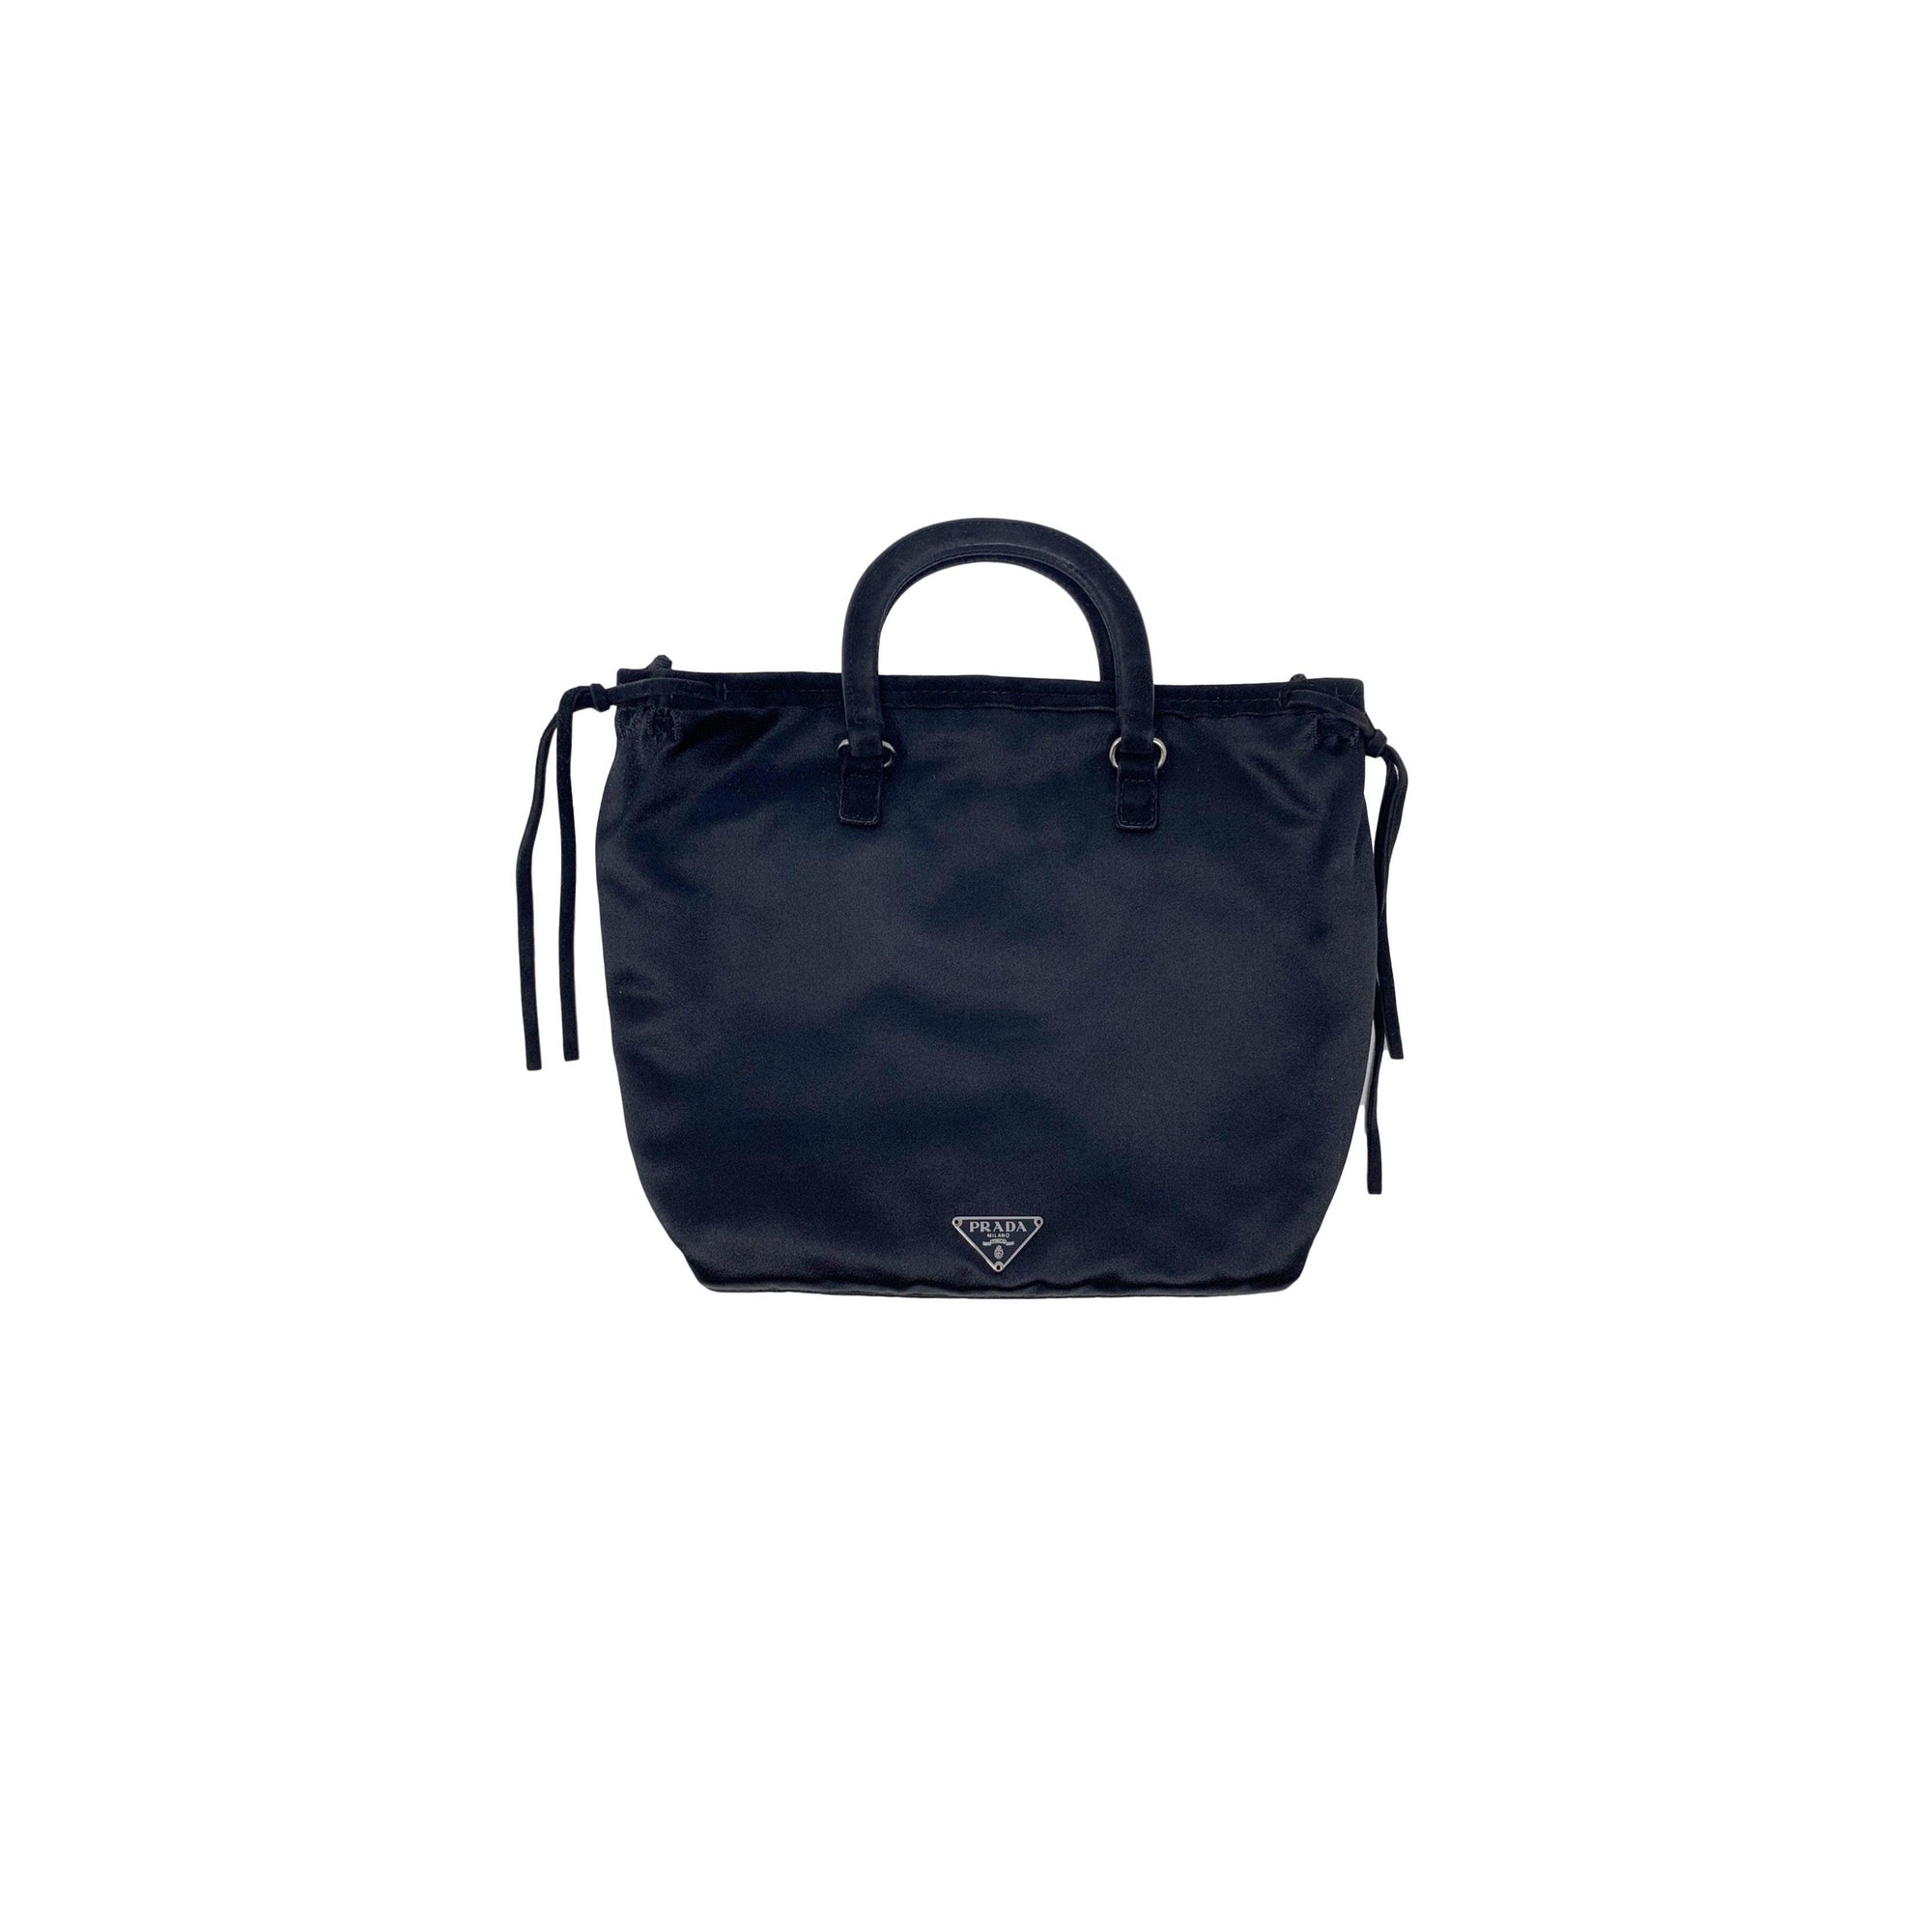 Prada Black Satin And Suede Mini Bag - Handbags